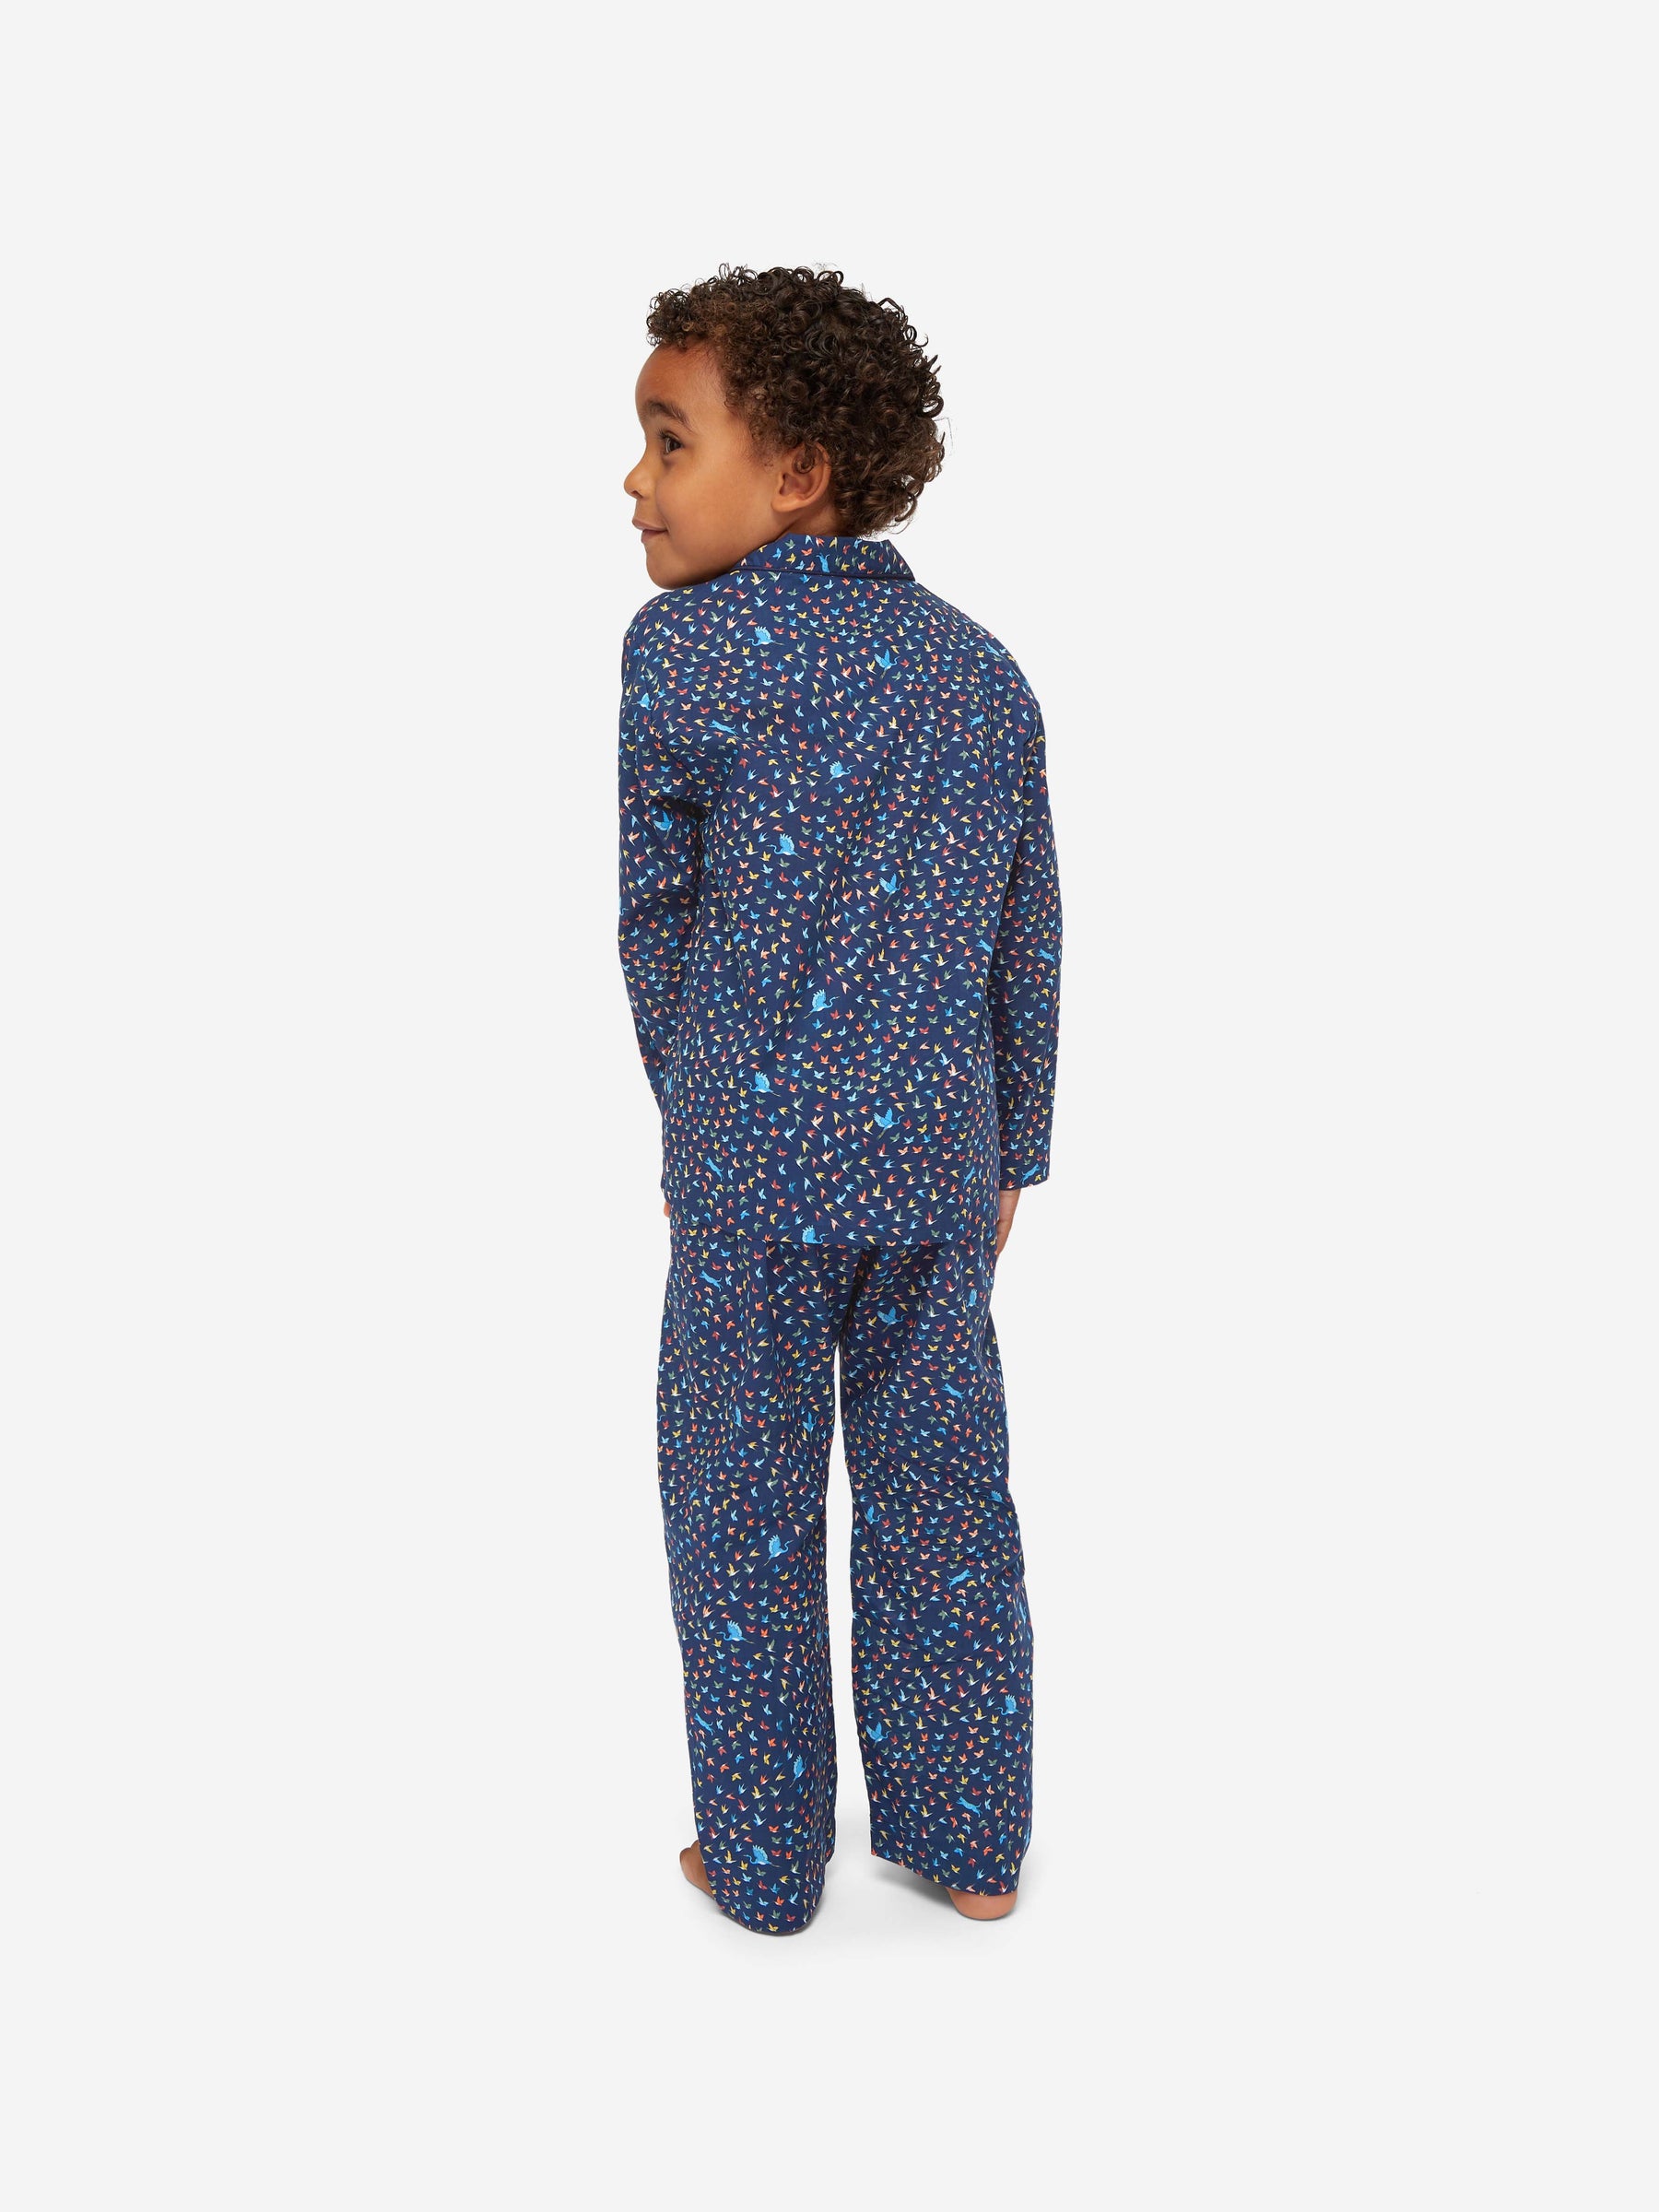 Kids' Pyjamas Ledbury 58 Cotton Batiste Multi